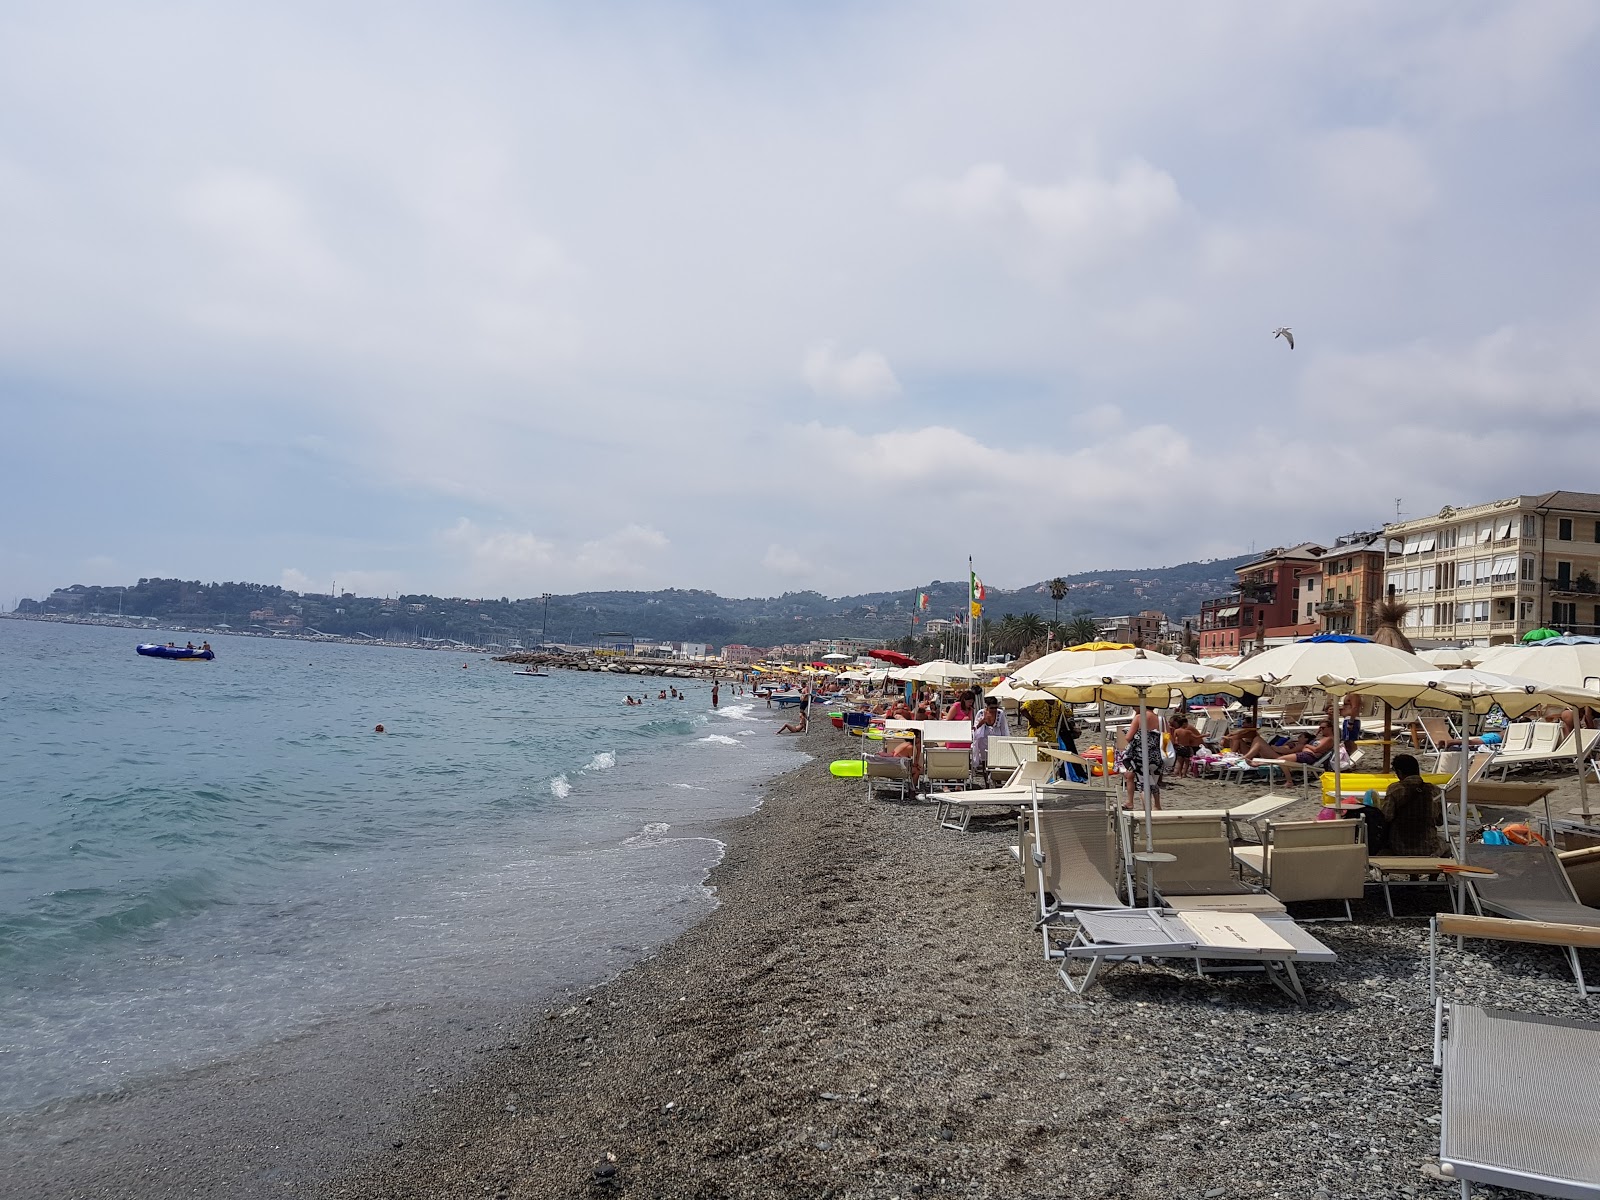 Foto de Spiaggia Varazze - lugar popular entre los conocedores del relax